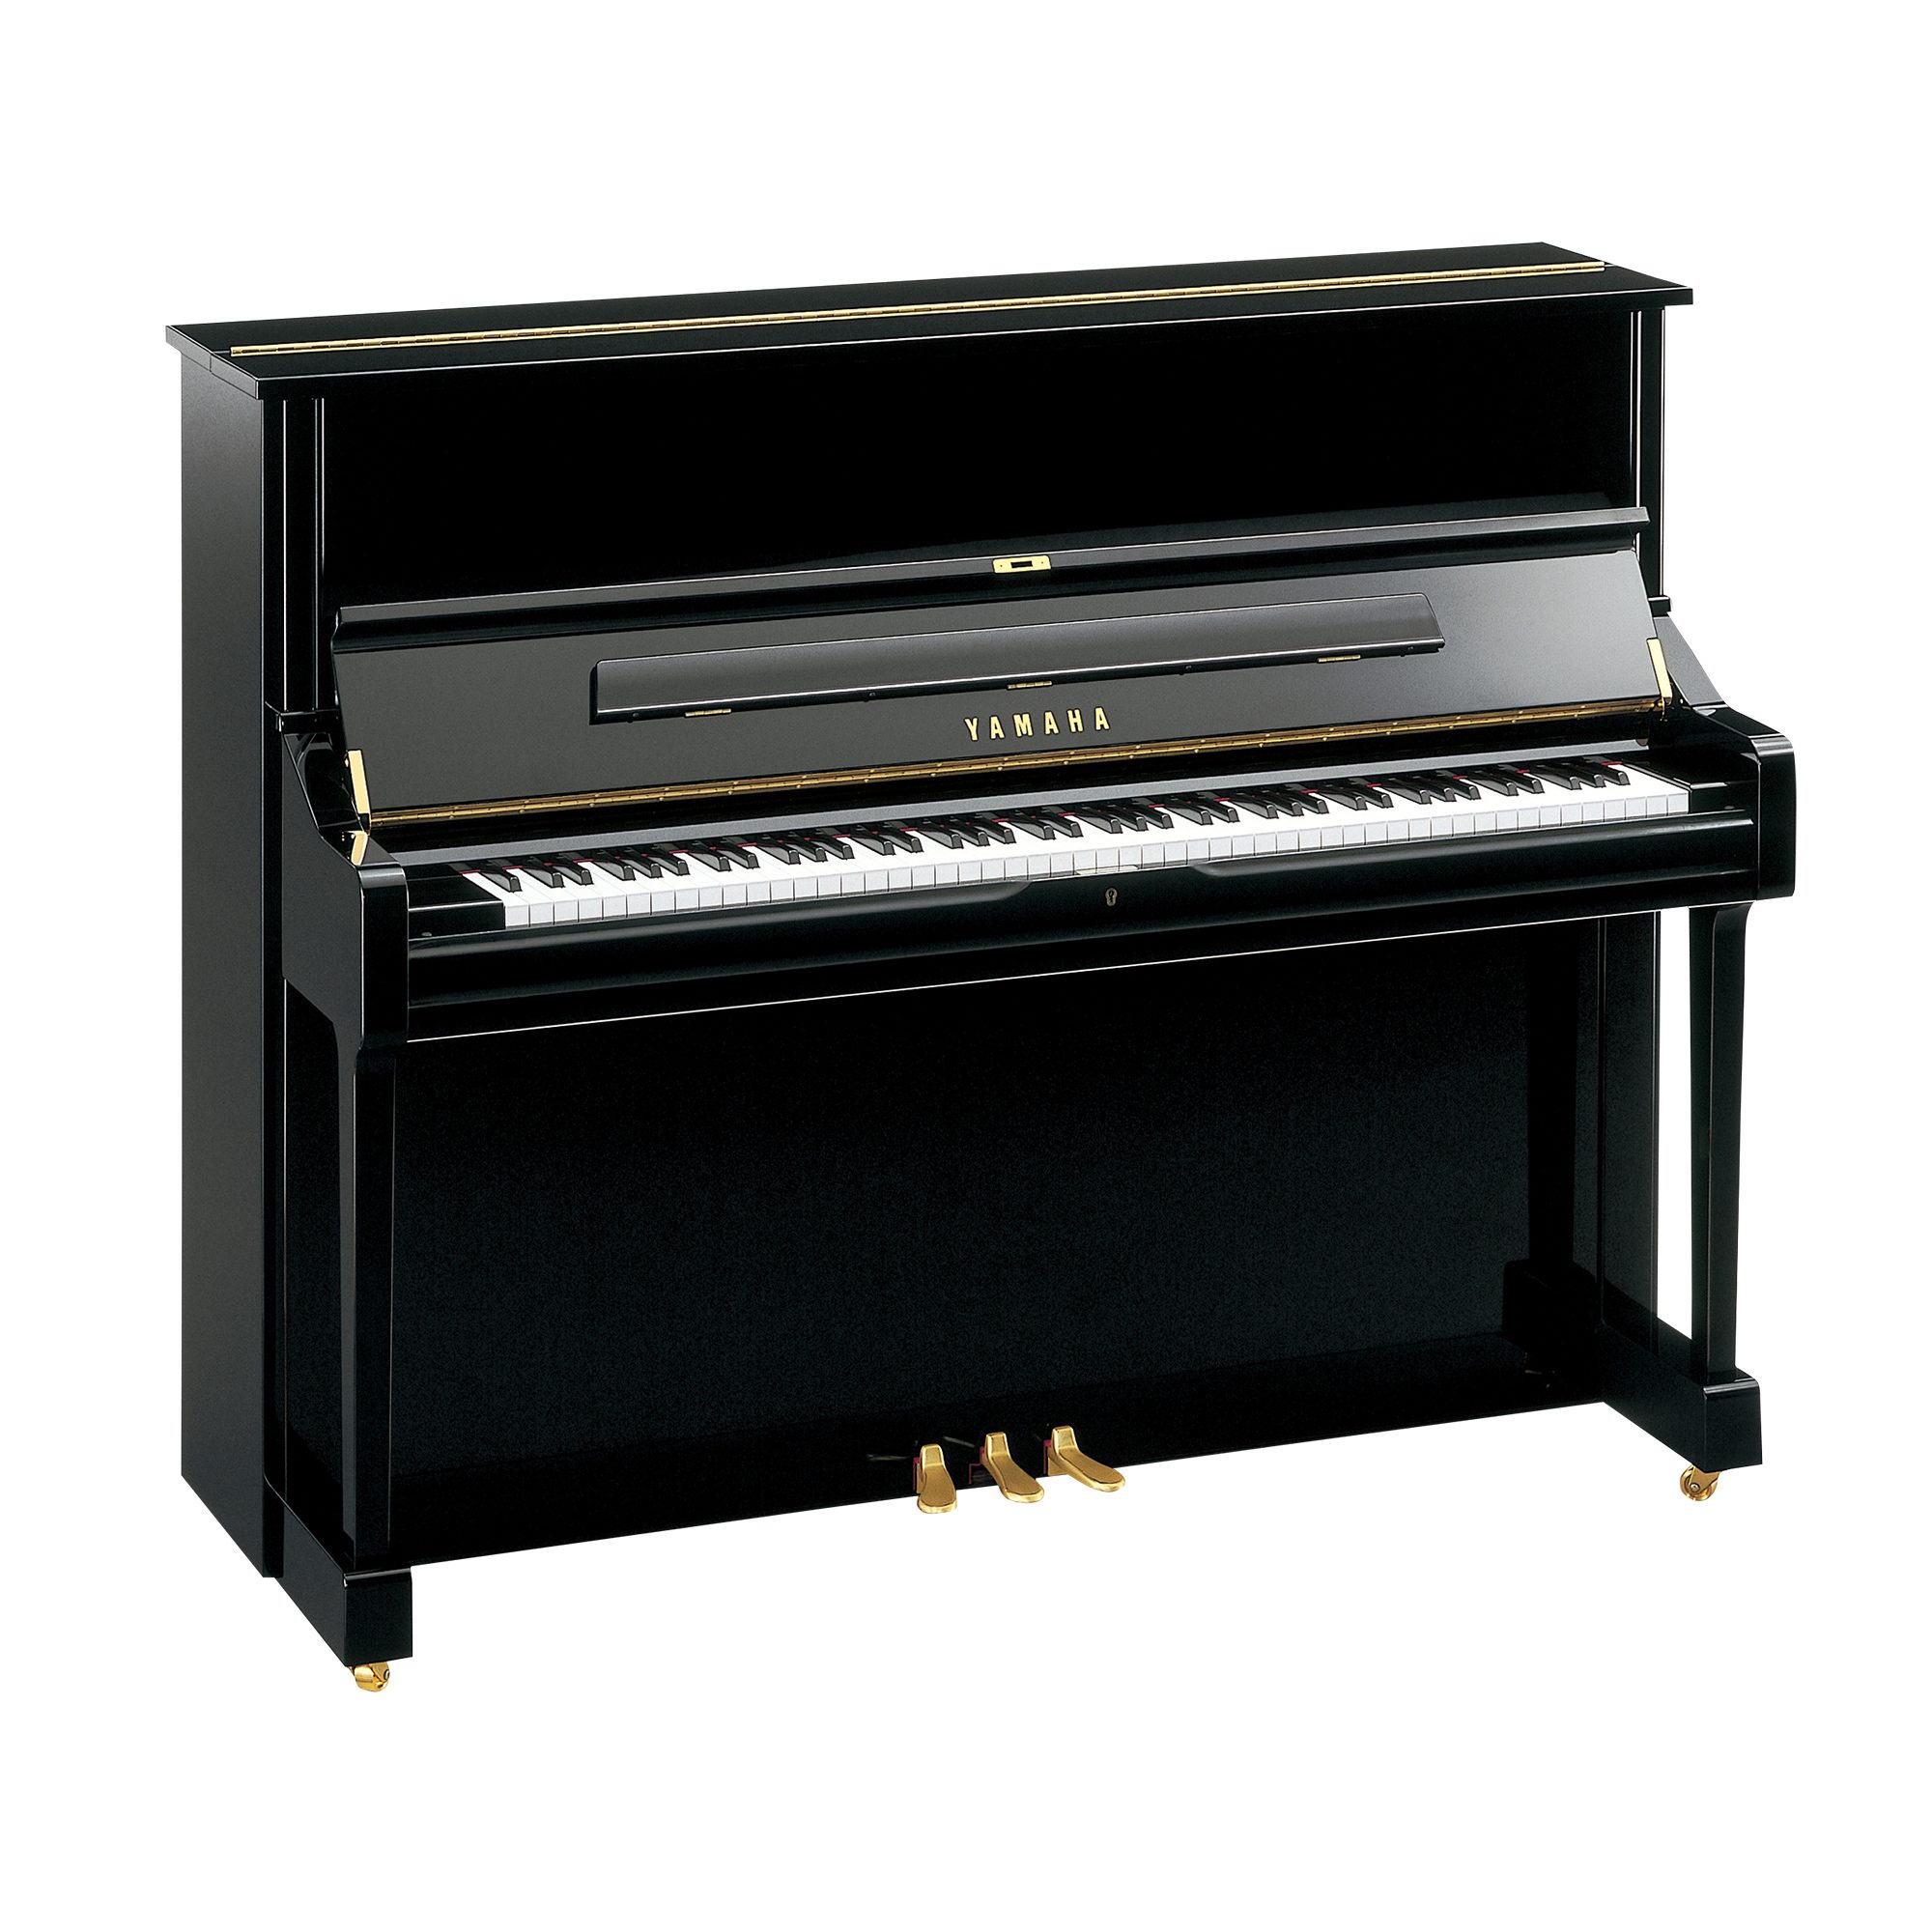 maíz Cena puerta Serie U - Descripción - PIANOS VERTICALES - Pianos - Instrumentos musicales  - Productos - Yamaha - España